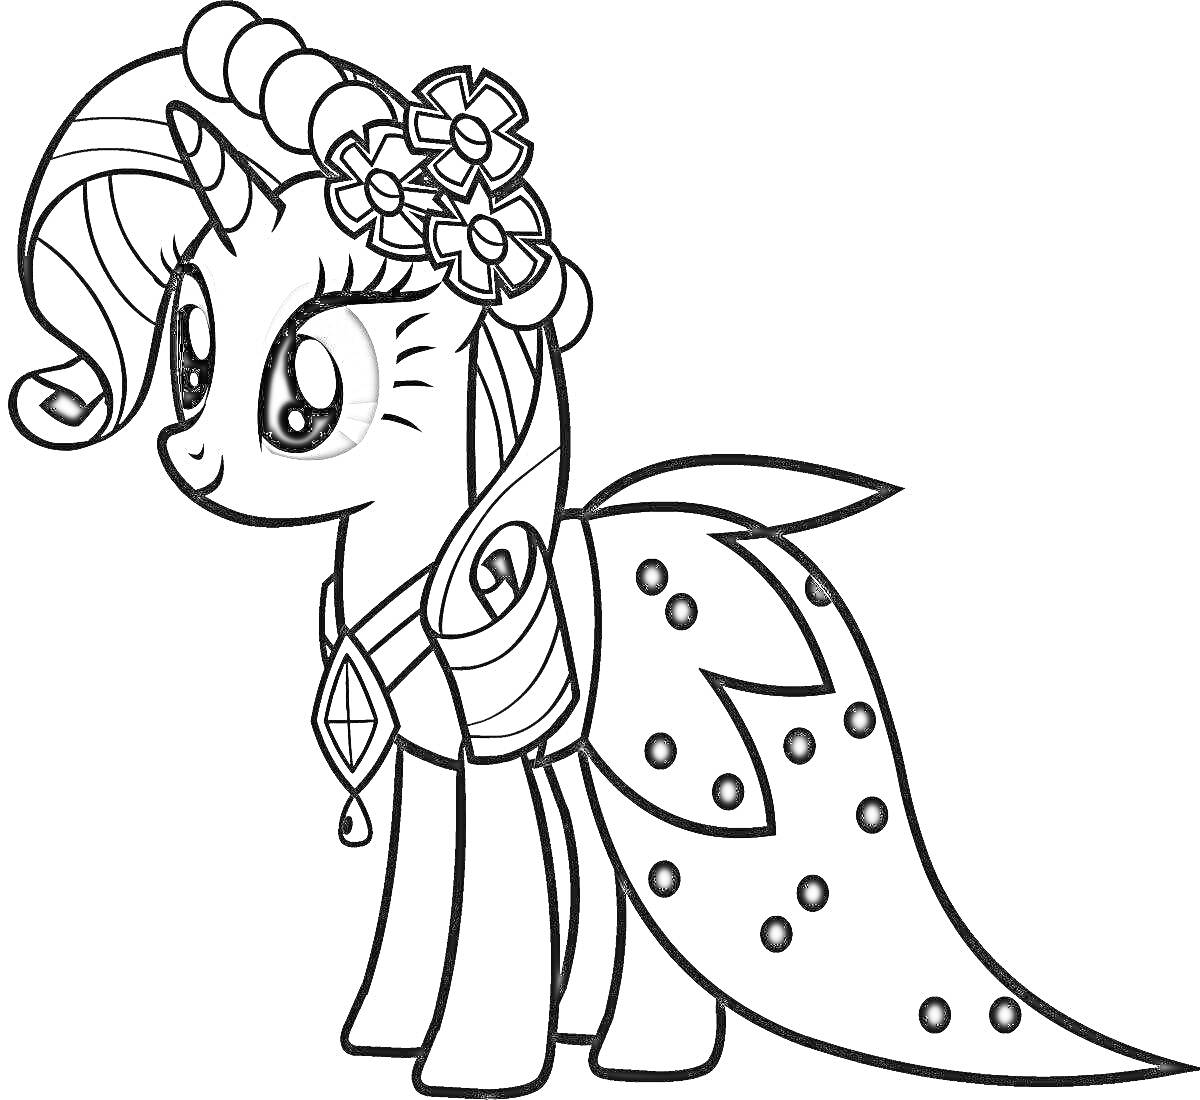 Раскраска Пони с завитой гривой, украшенной цветами, в нарядном платье с узорами